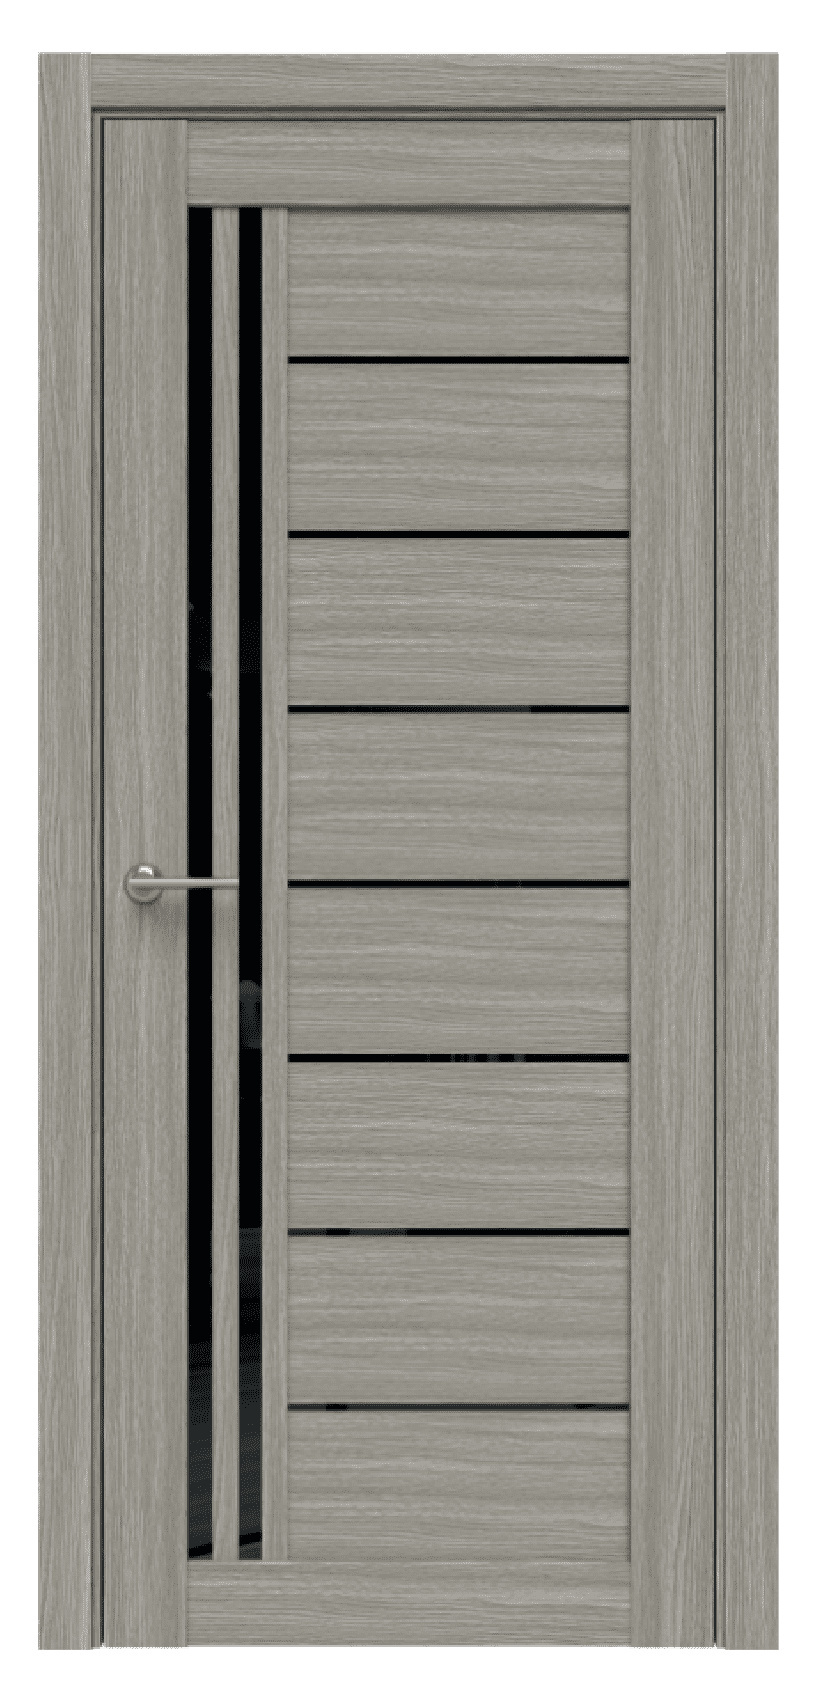 Questdoors Межкомнатная дверь Q38, арт. 17474 - фото №1